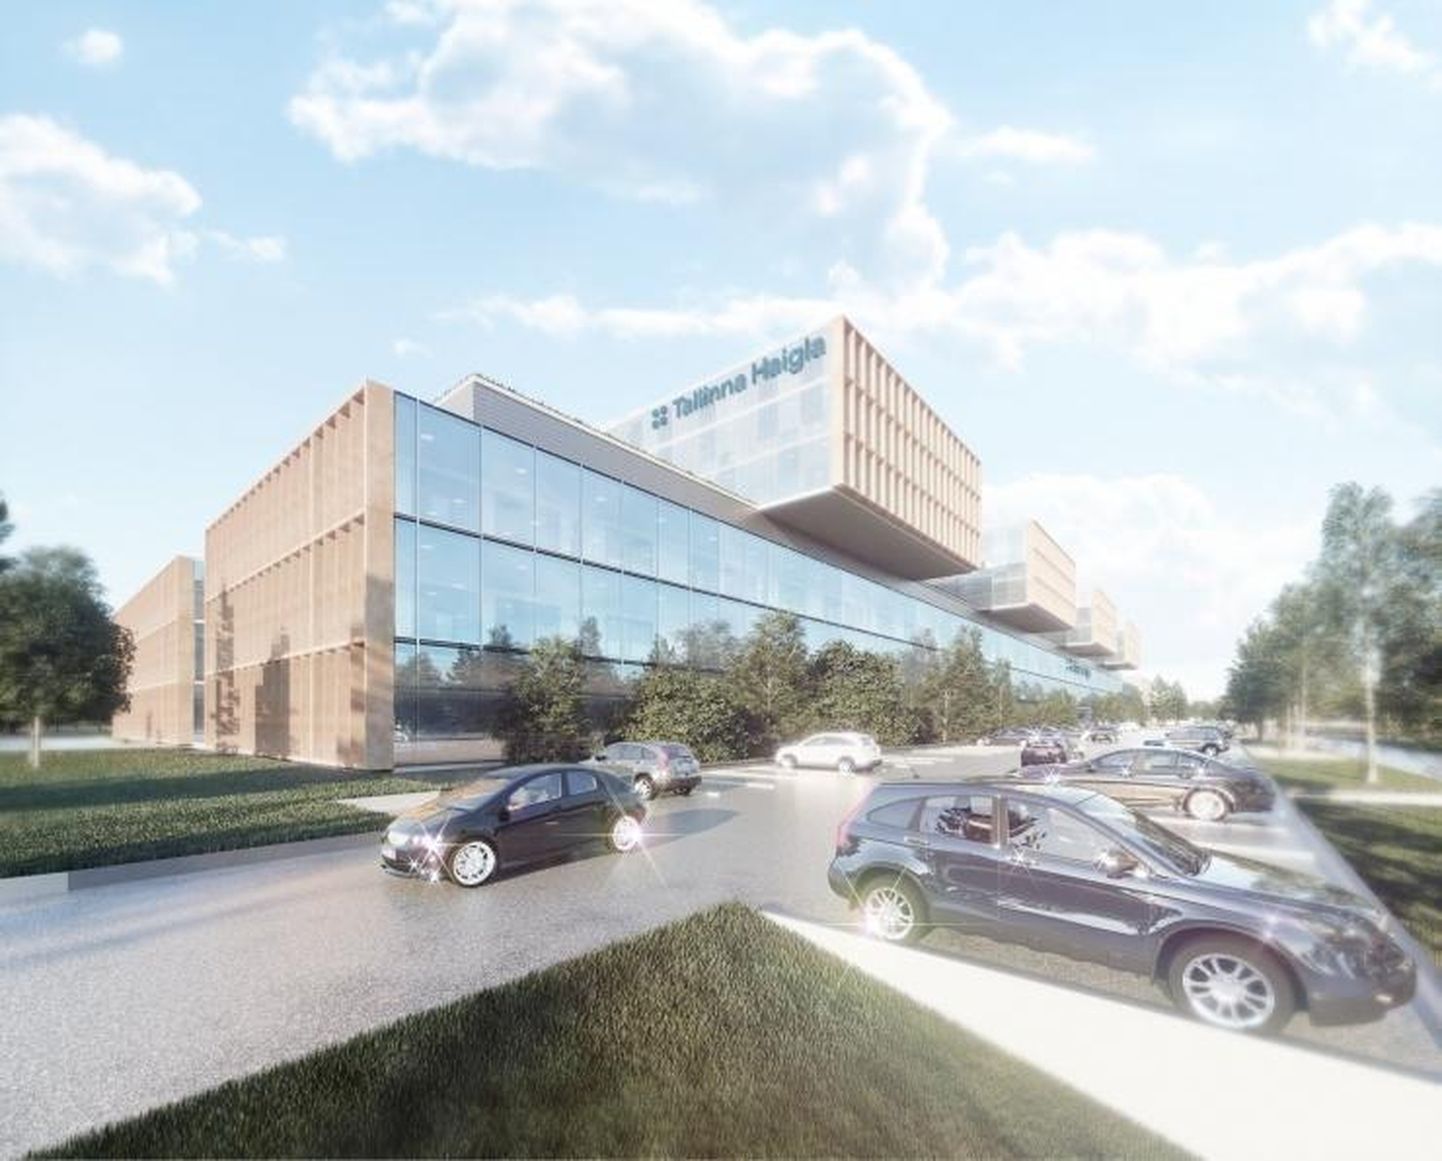 Будущий облик Таллиннской больницы.